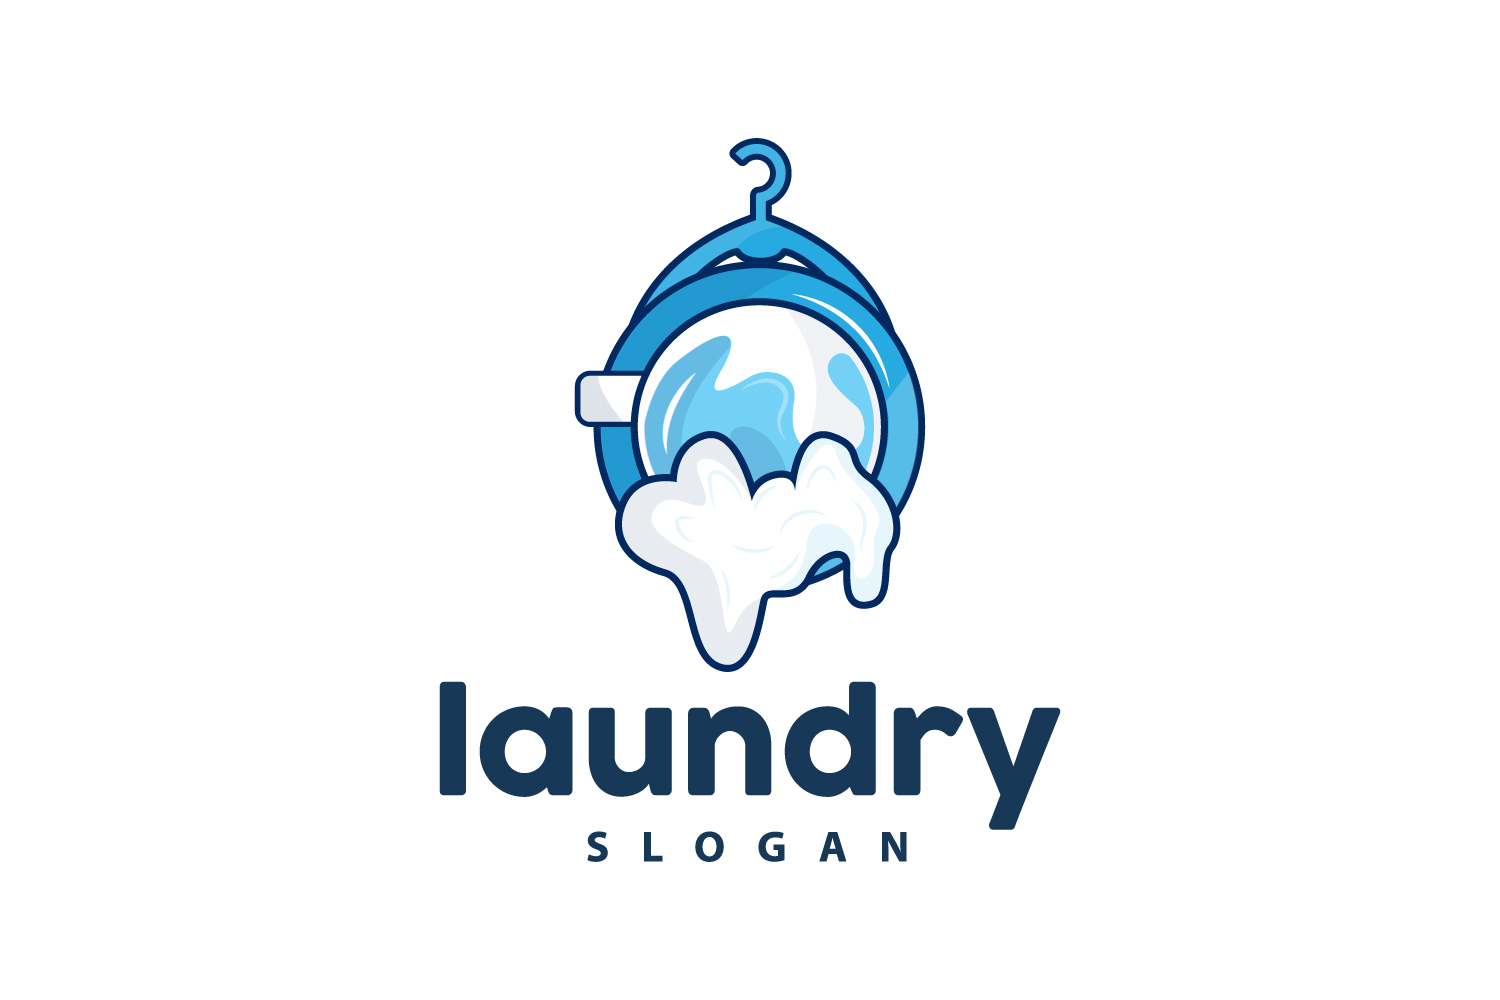 Laundry Logo Cleaning Washing Vector LaundryV10